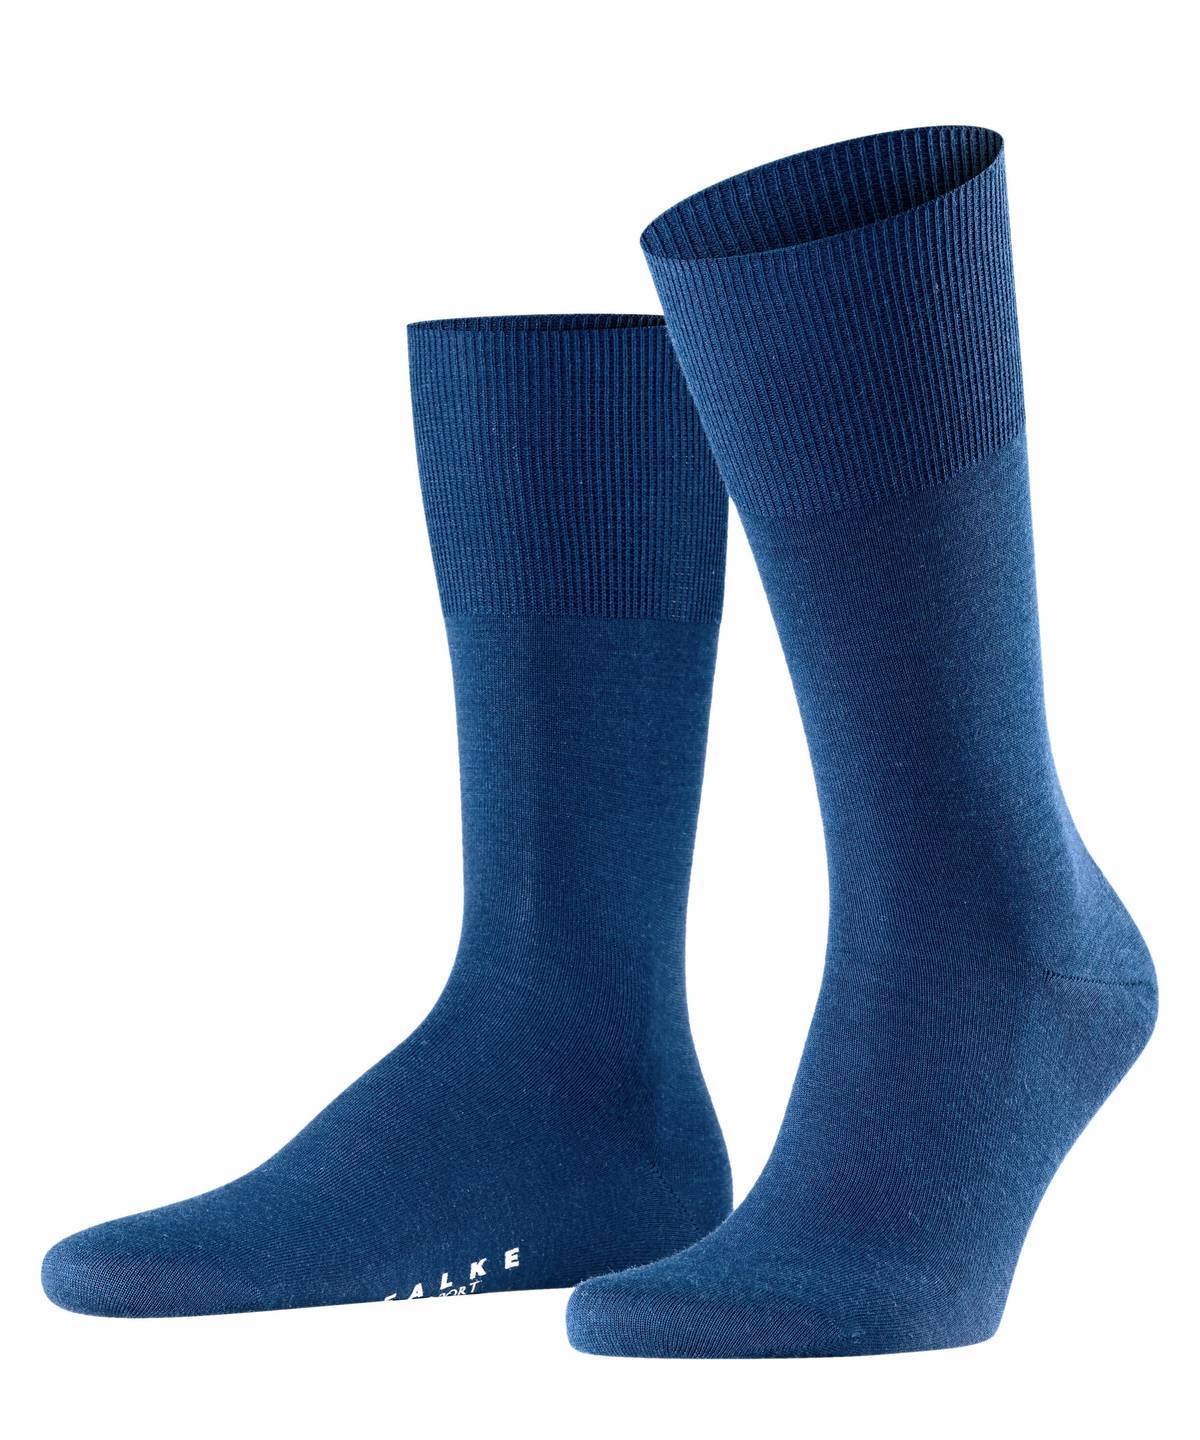 Falke Herren Socken Hersteller: Falke Bestellnummer:4004758680022